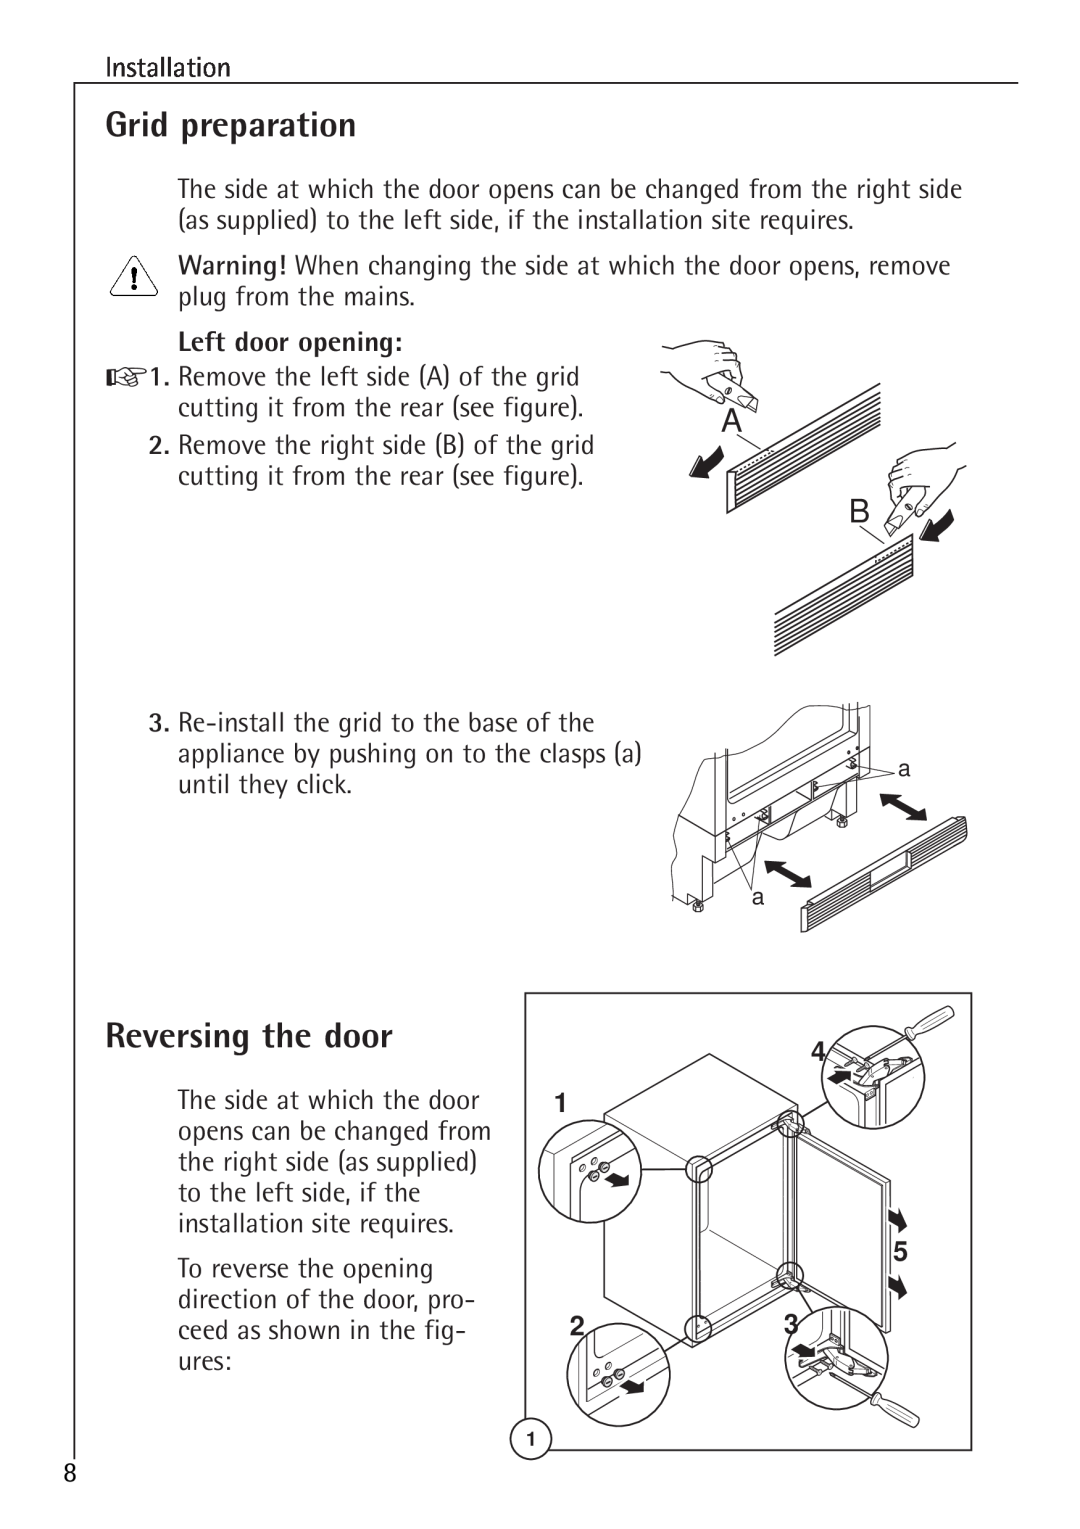 Electrolux U 86000-4 manual Grid preparation, Reversing the door, Left door opening 